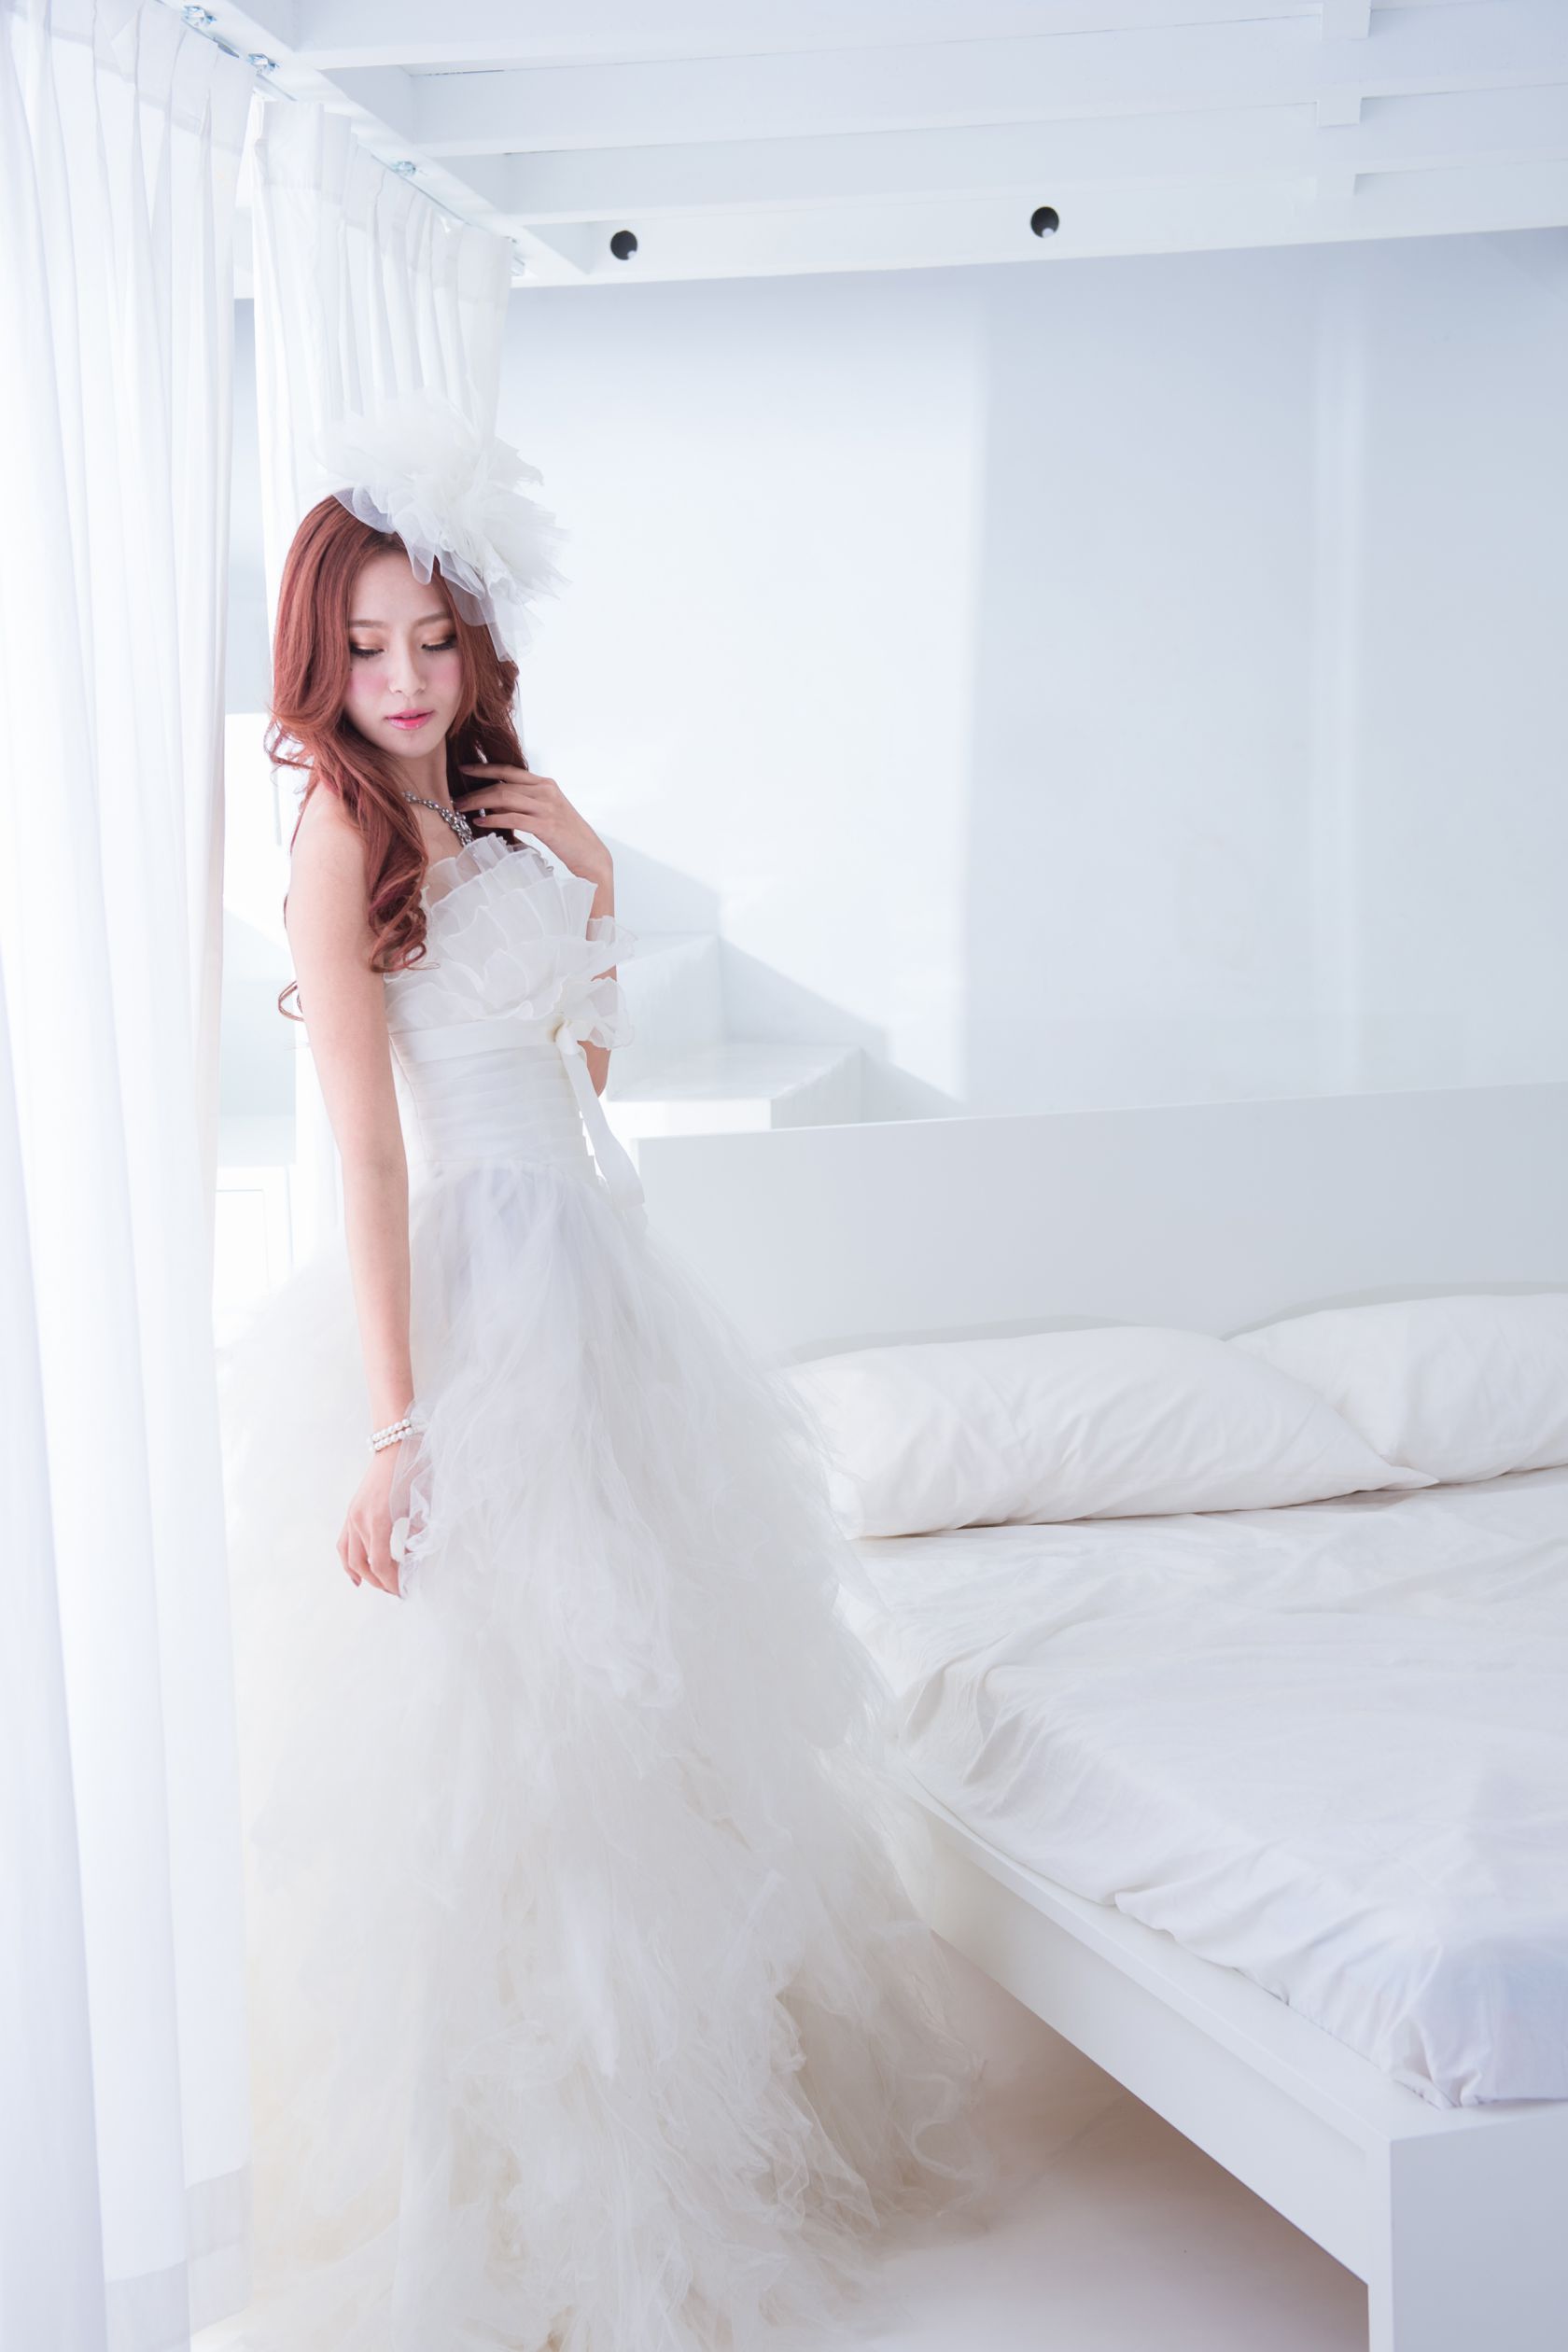 台湾美女模特Winnie小雪 - 超高清婚紗場图集